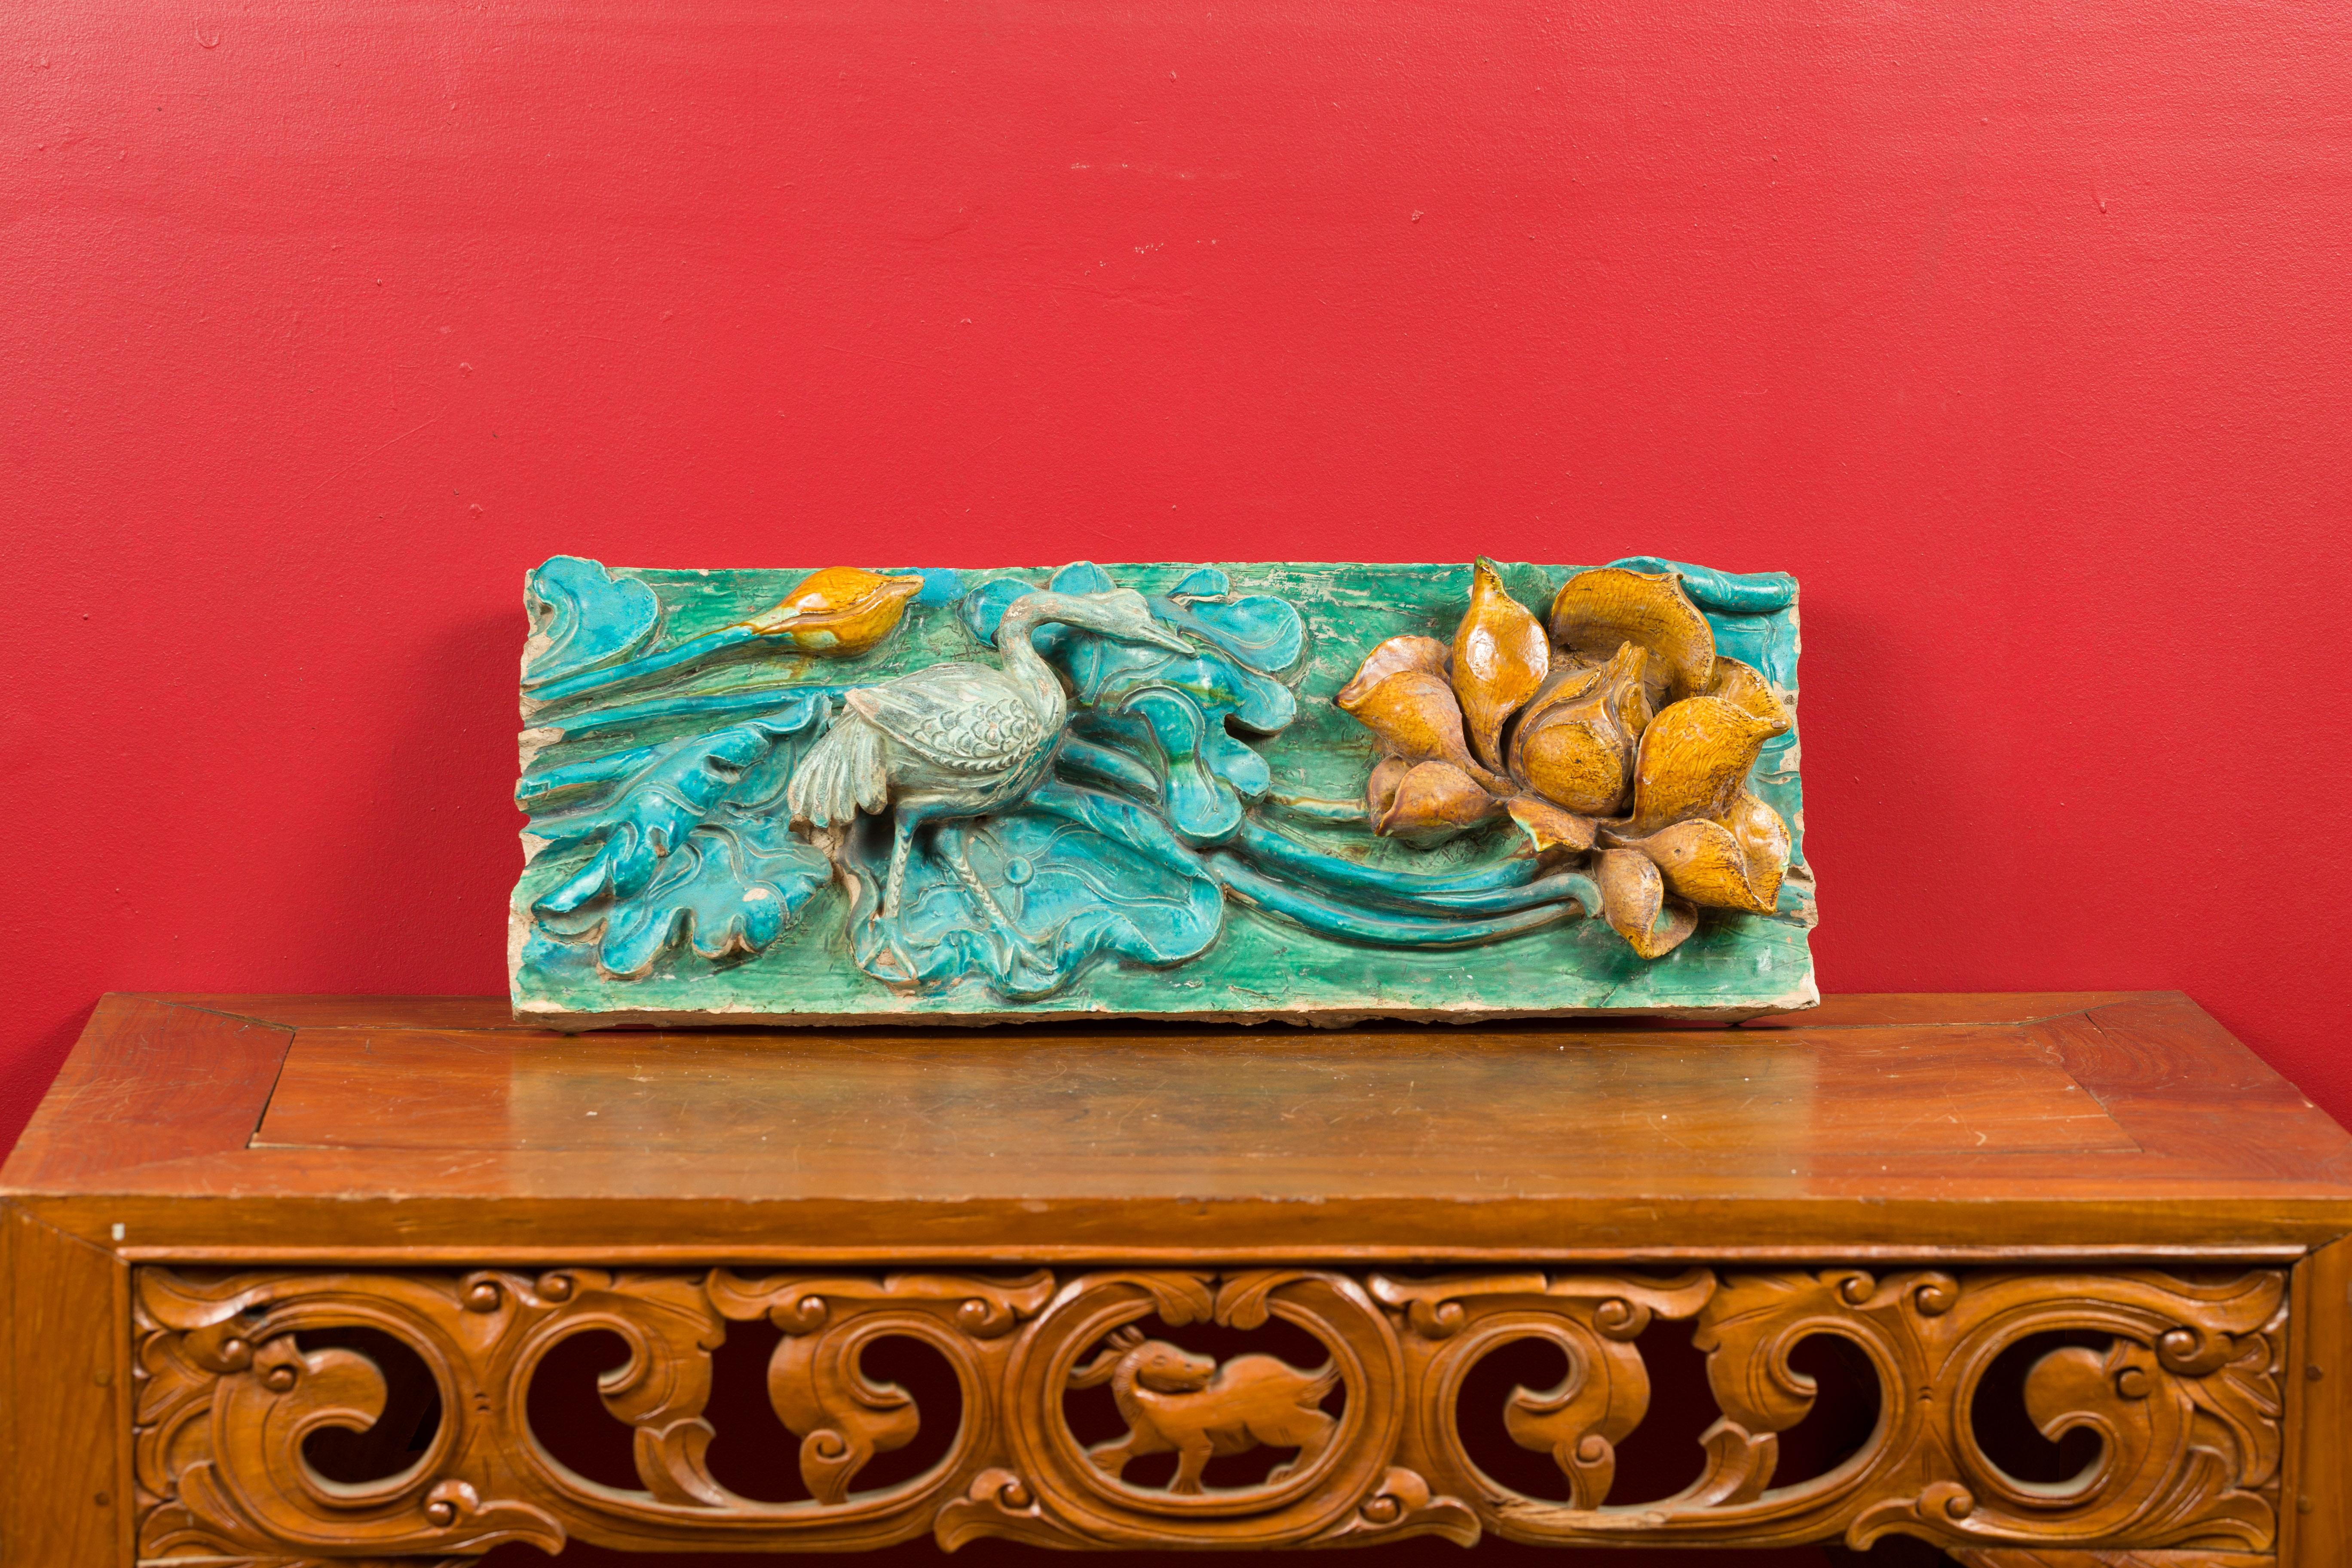 Tuile ancienne de la période de la dynastie chinoise Ming avec finition turquoise, grue et fleur. Créée en Chine pendant la dynastie Ming (1368-1644), cette tuile ancienne présente un fond turquoise et vert orné de feuillages. Une grue se promène au